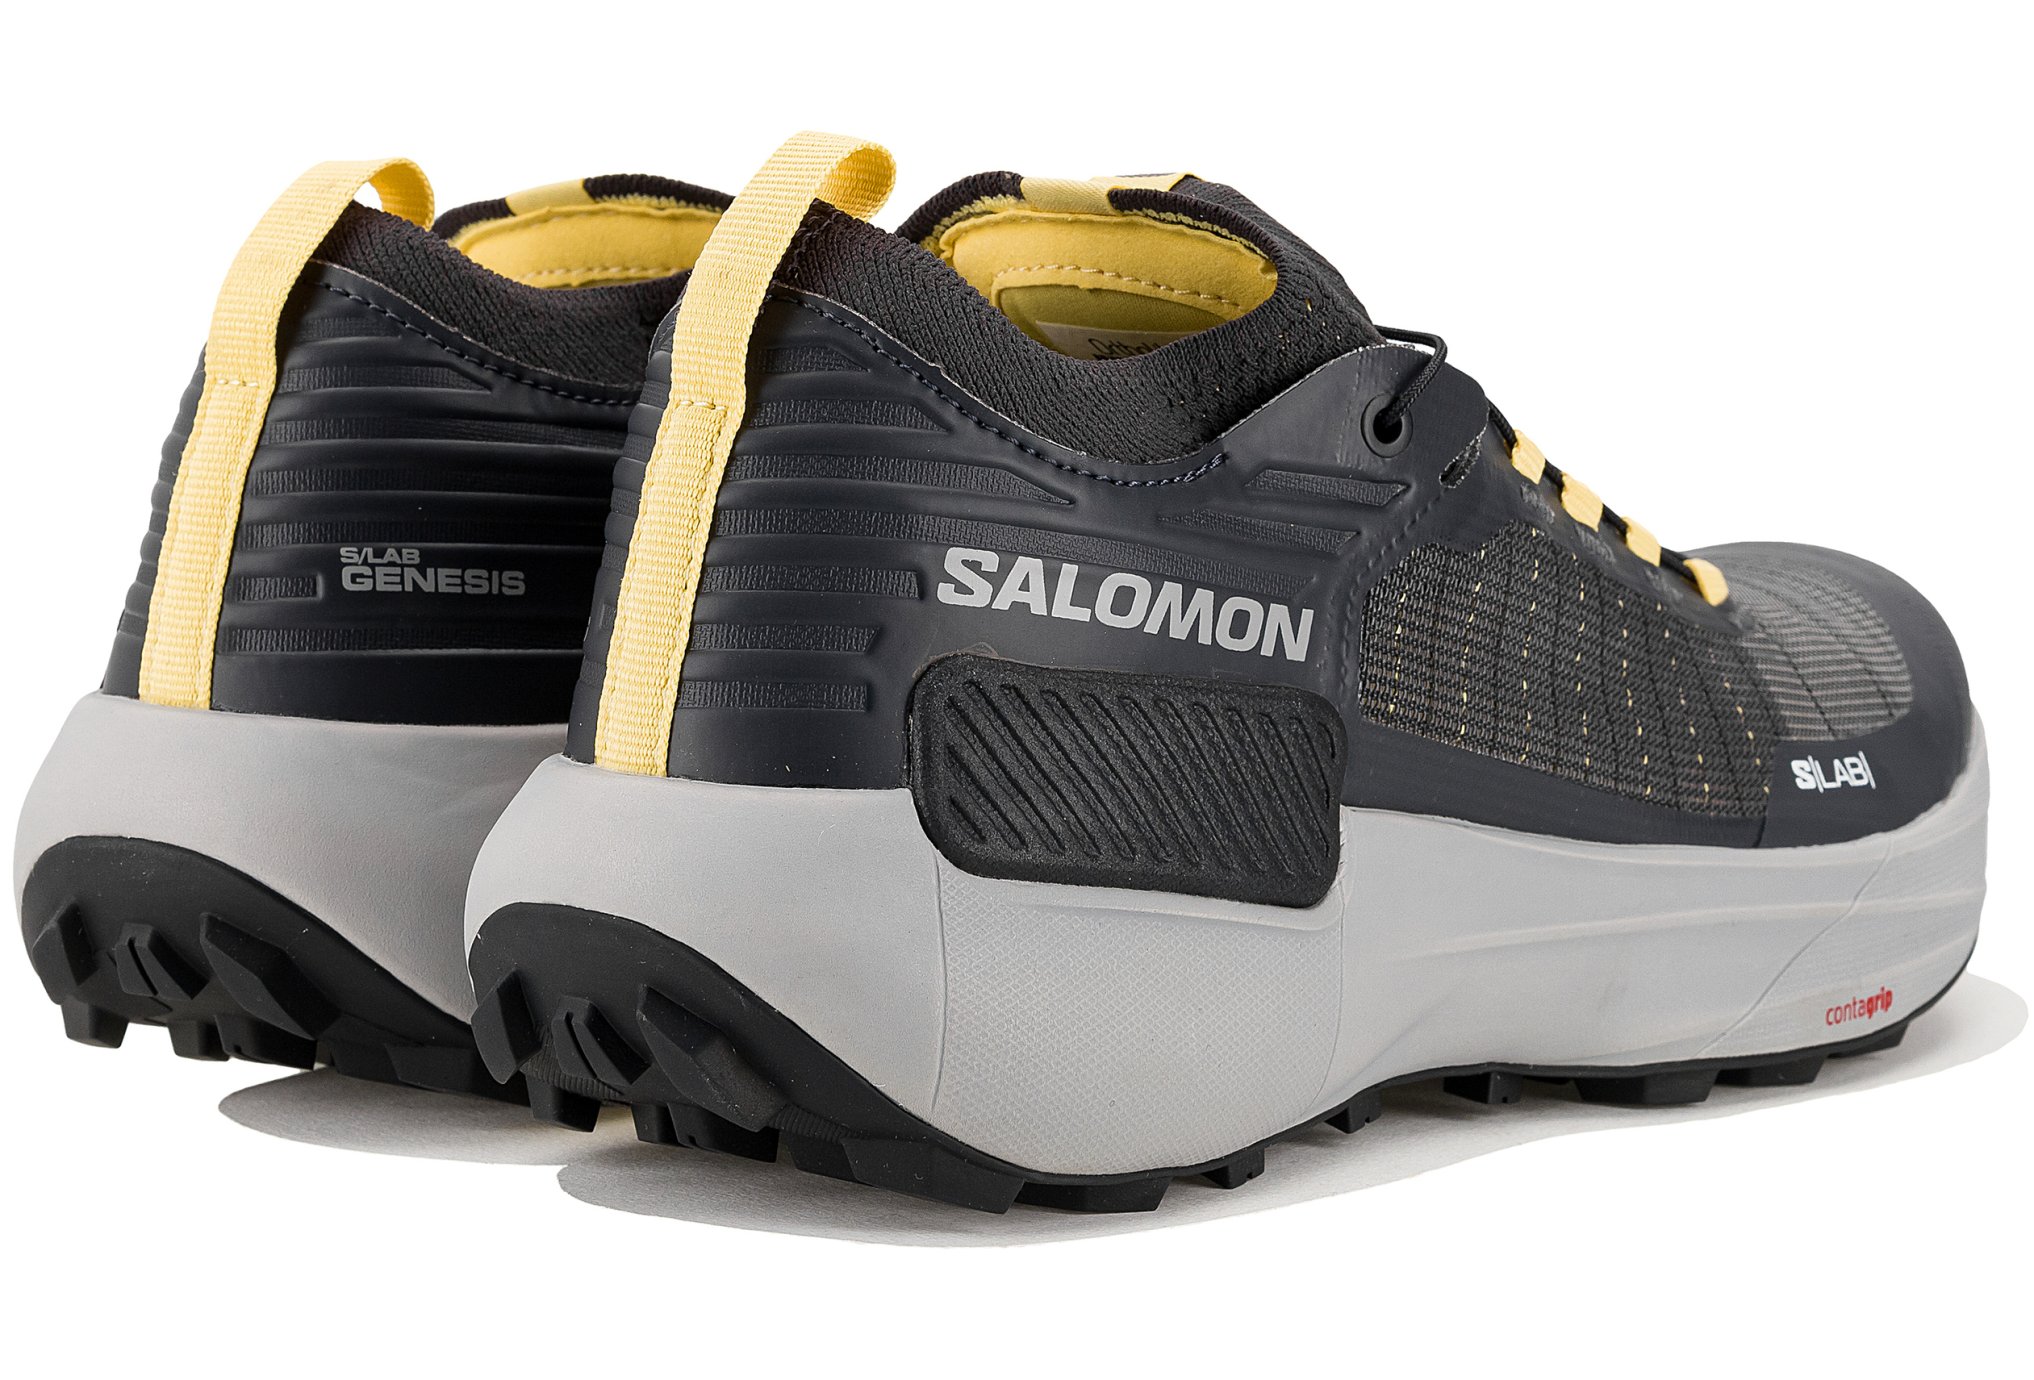 salomon-s-lab-genesis-w-chaussures-running-femme-599078-1-fz